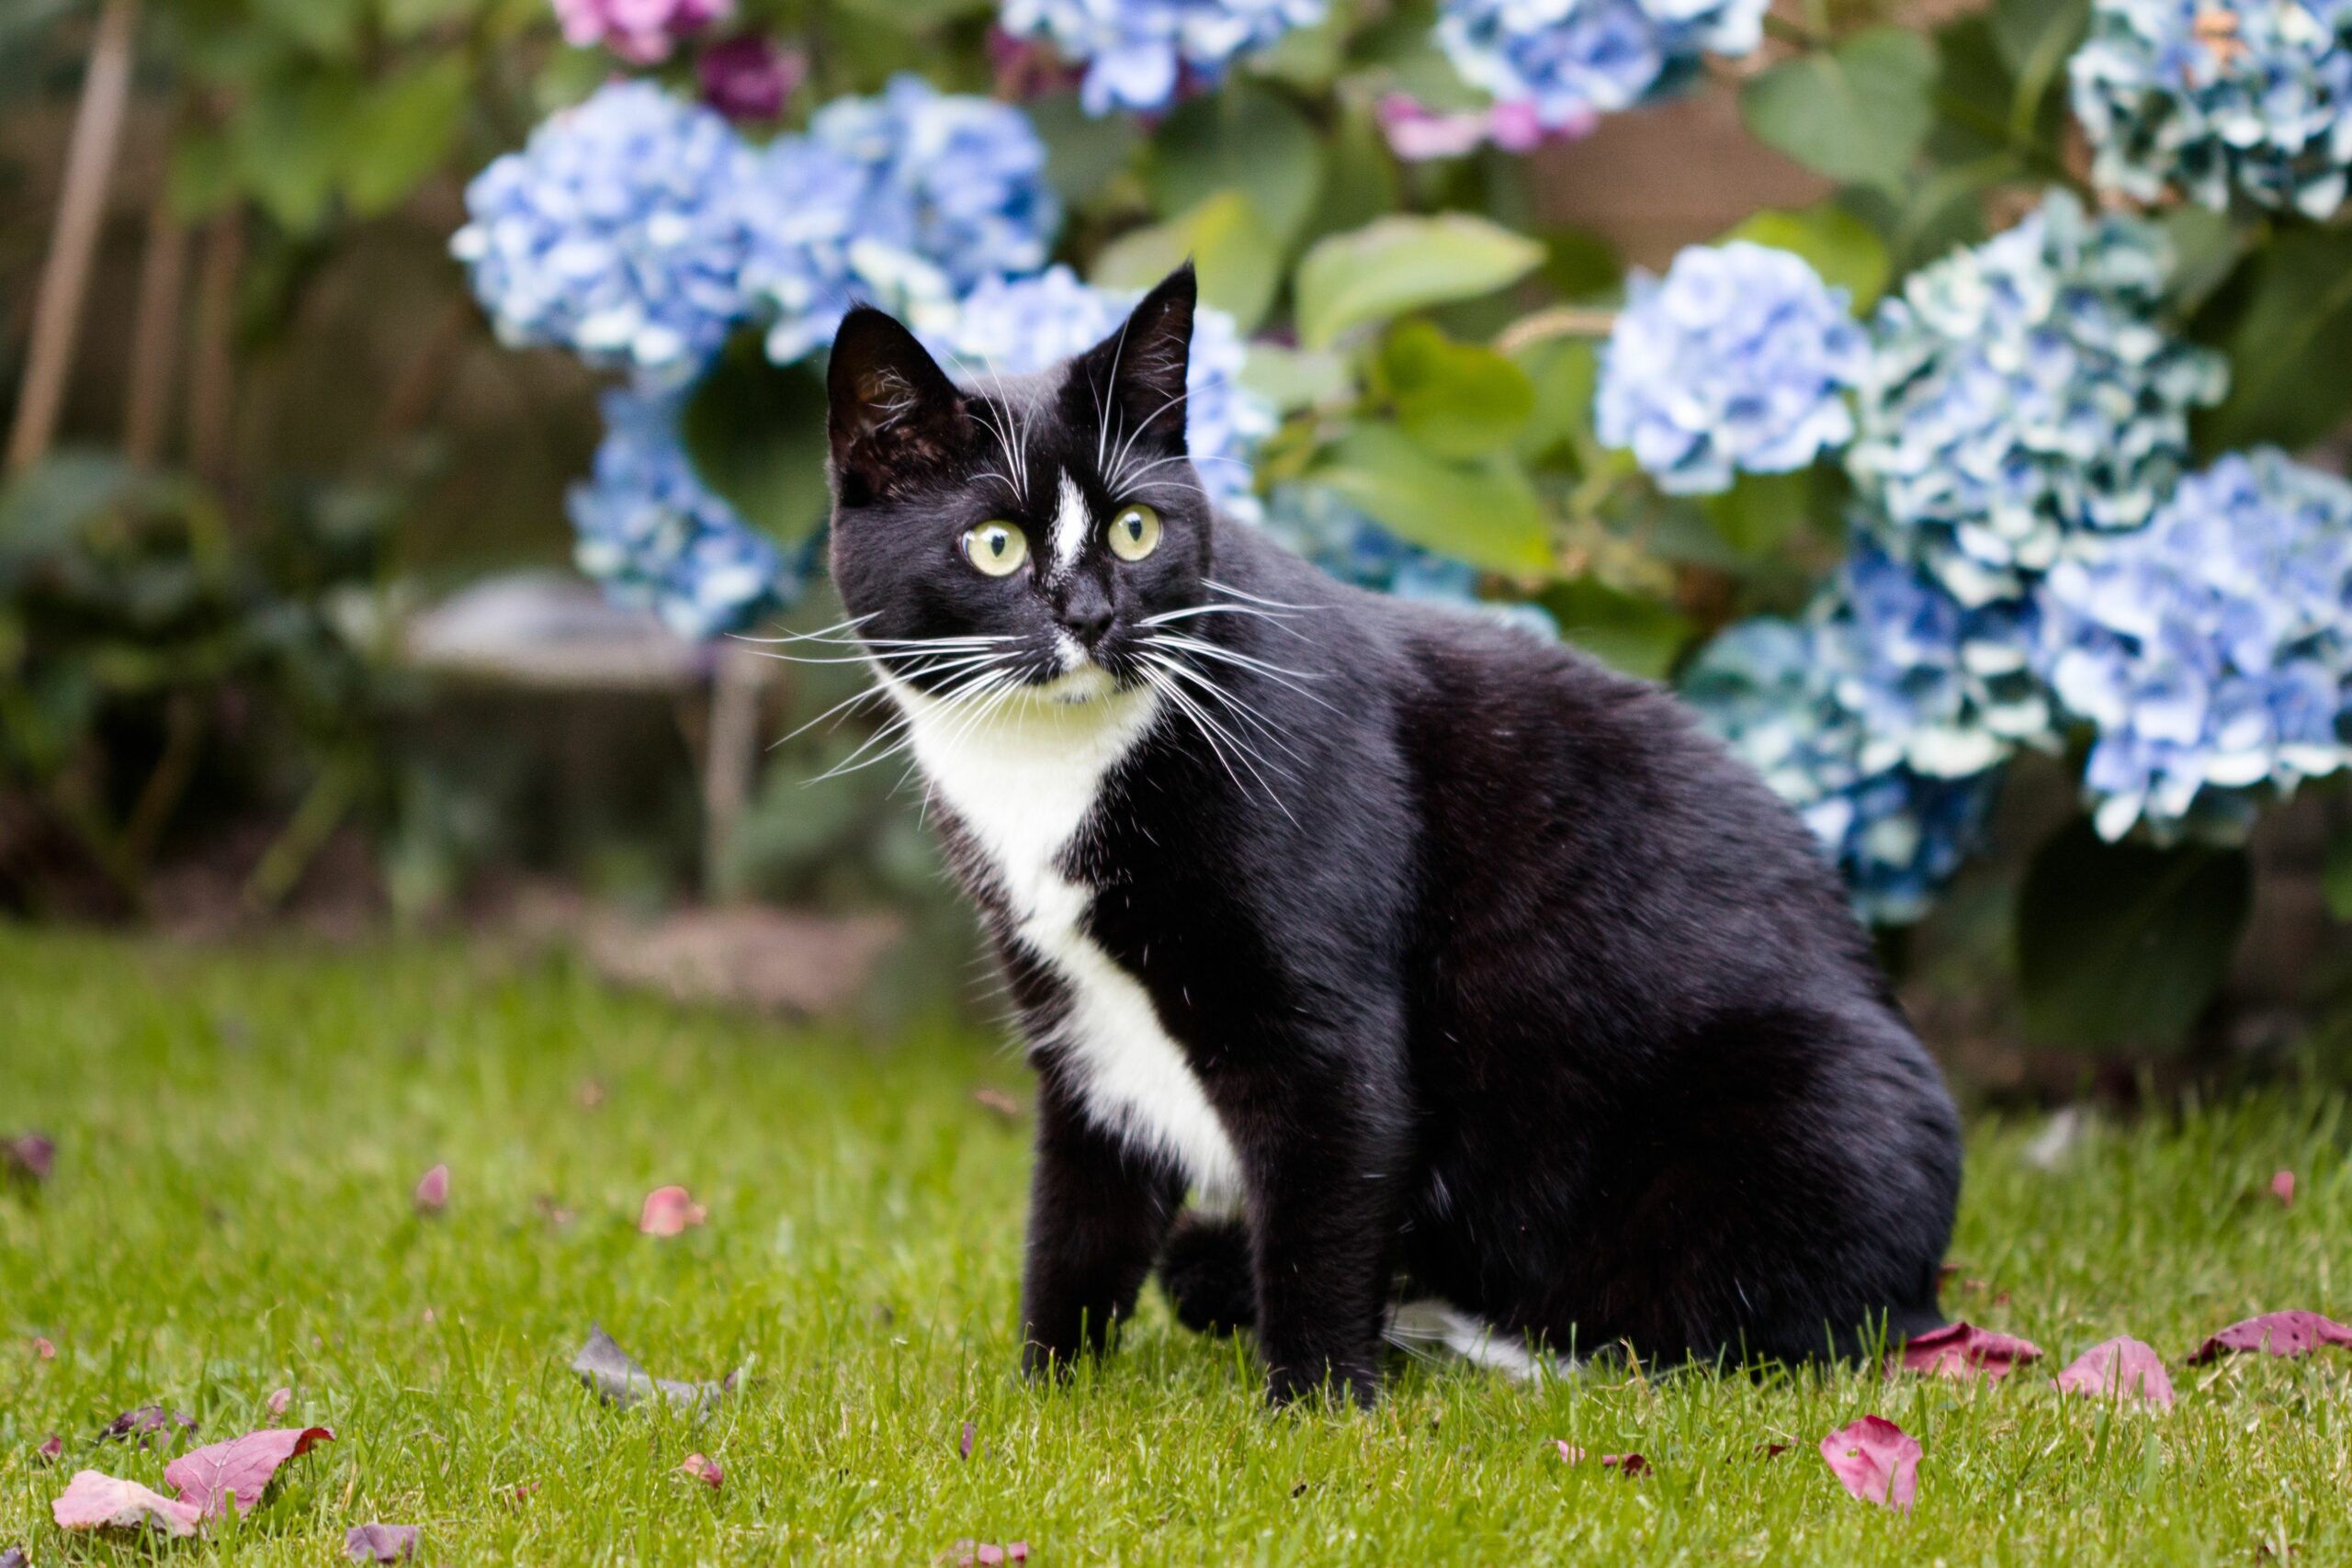 black and white cat in grass by hydrangeas 0b87eca4e89a4c789ea4f68aebc00130 scaled